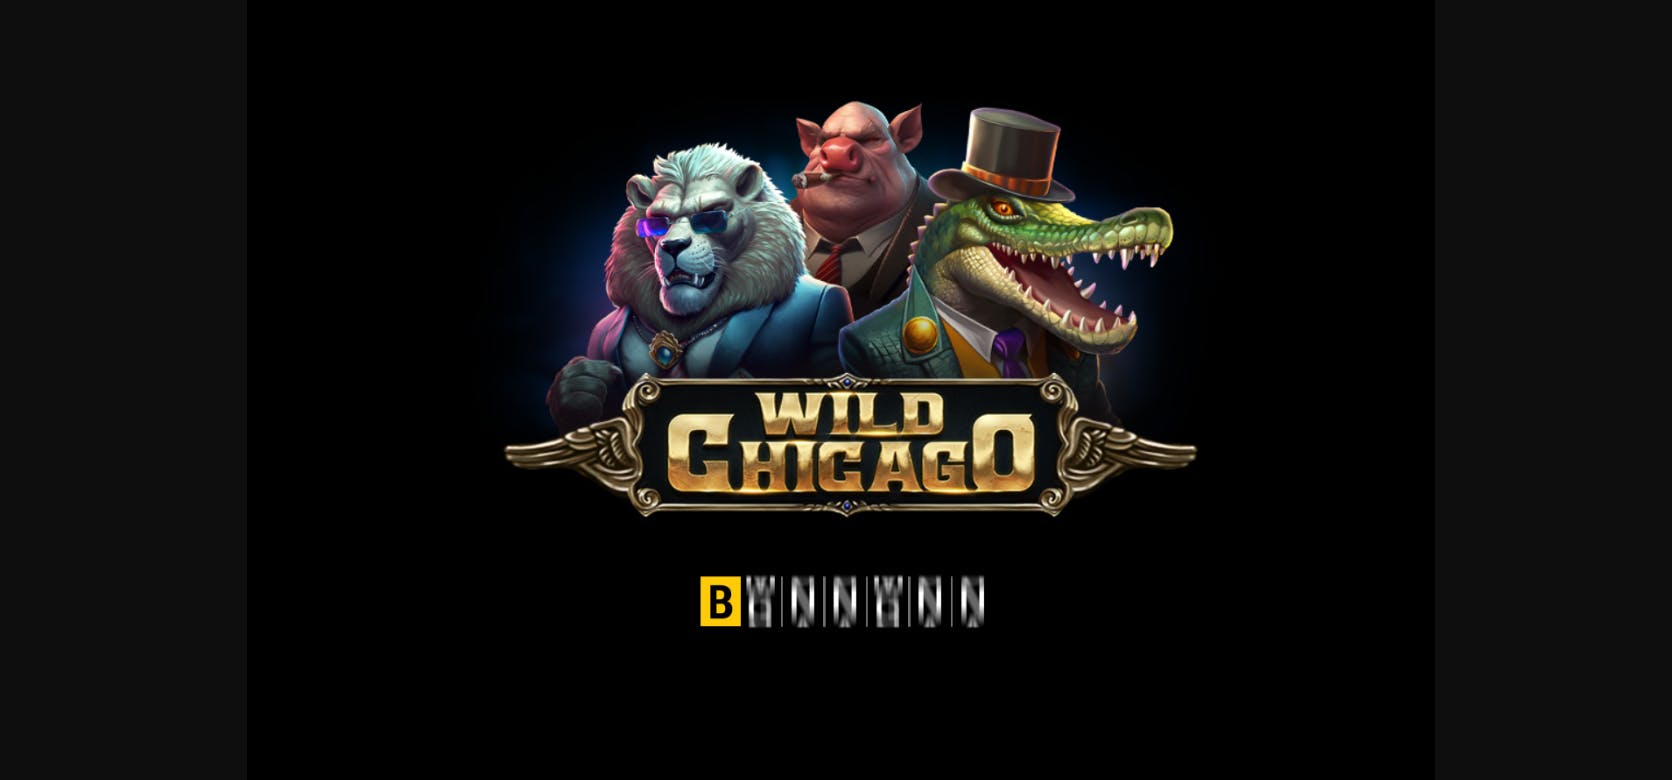 La tragamonedas Wild Chicago ya está disponible en la catera de juegos de BGaming